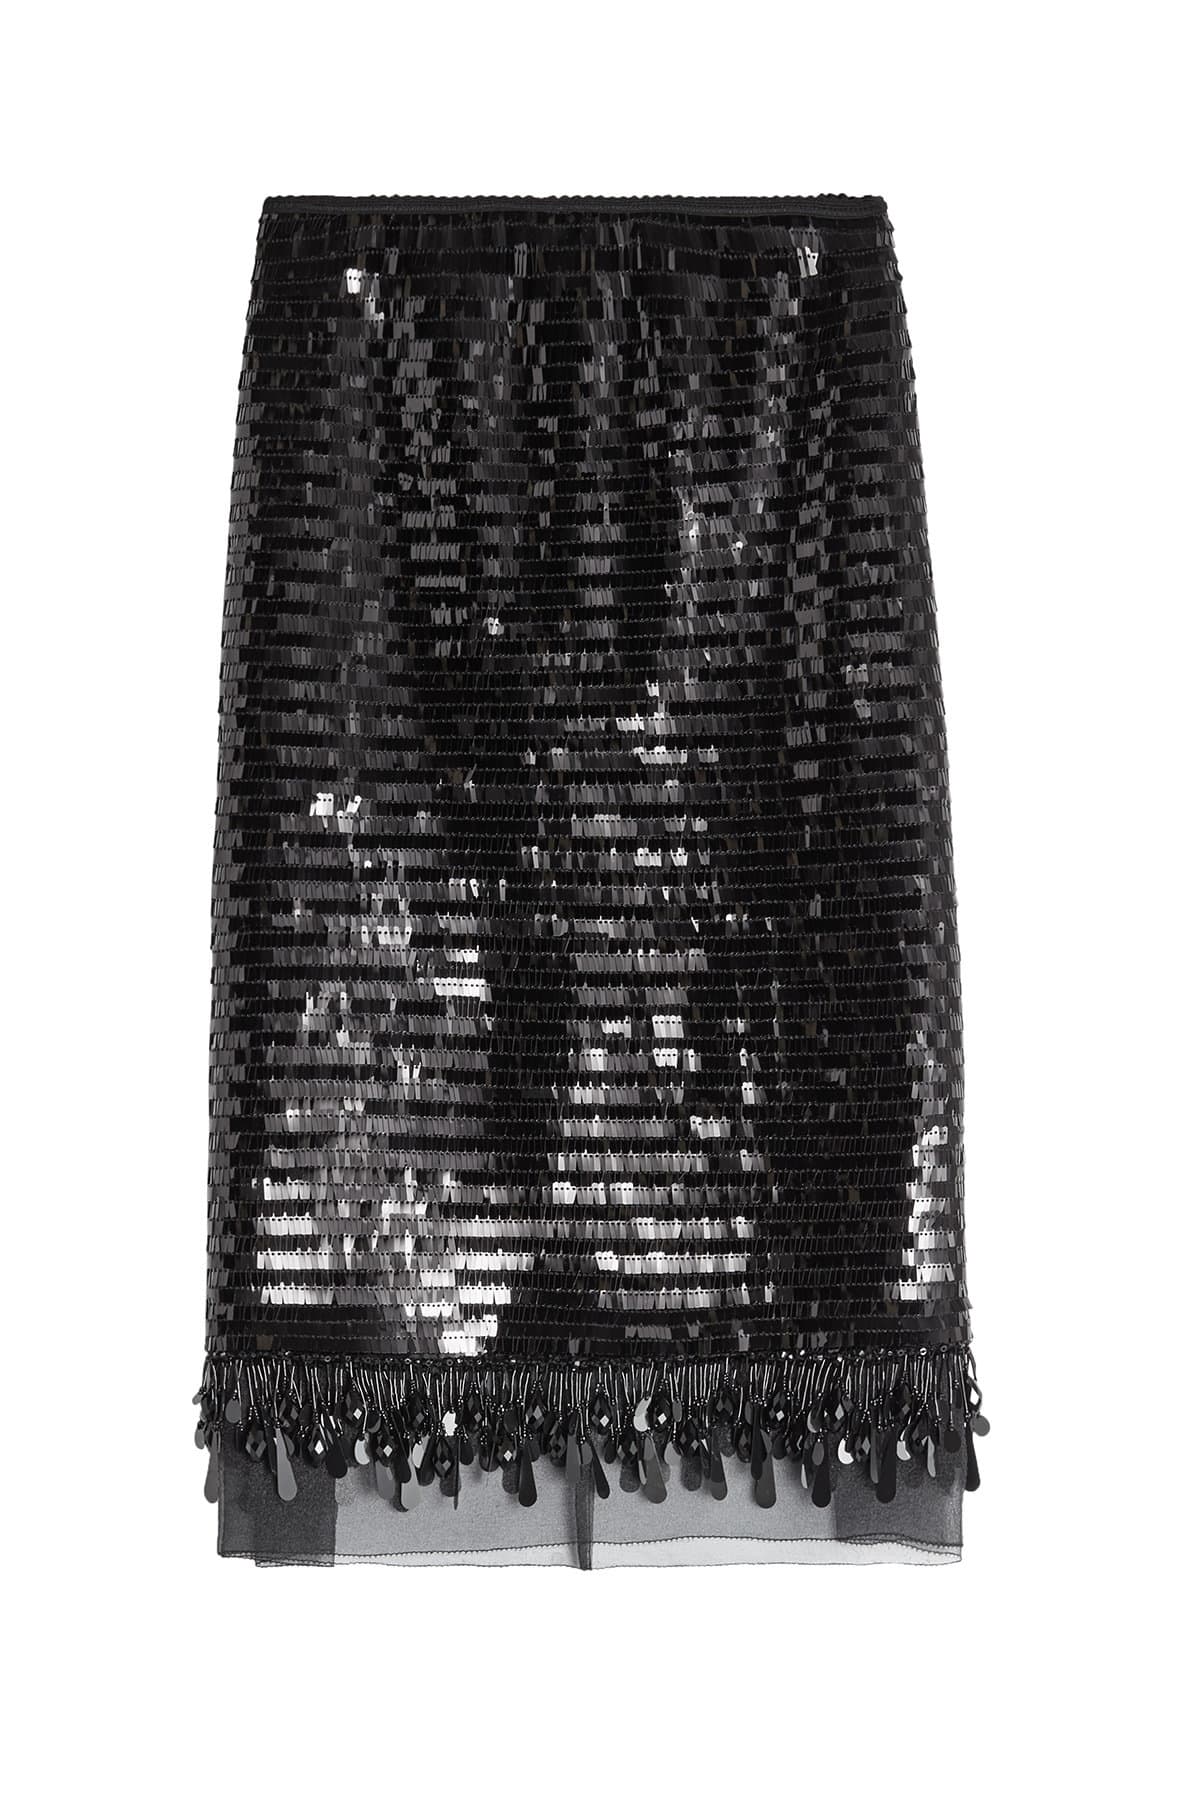 Marc Jacobs - Sequin Fringe Skirt